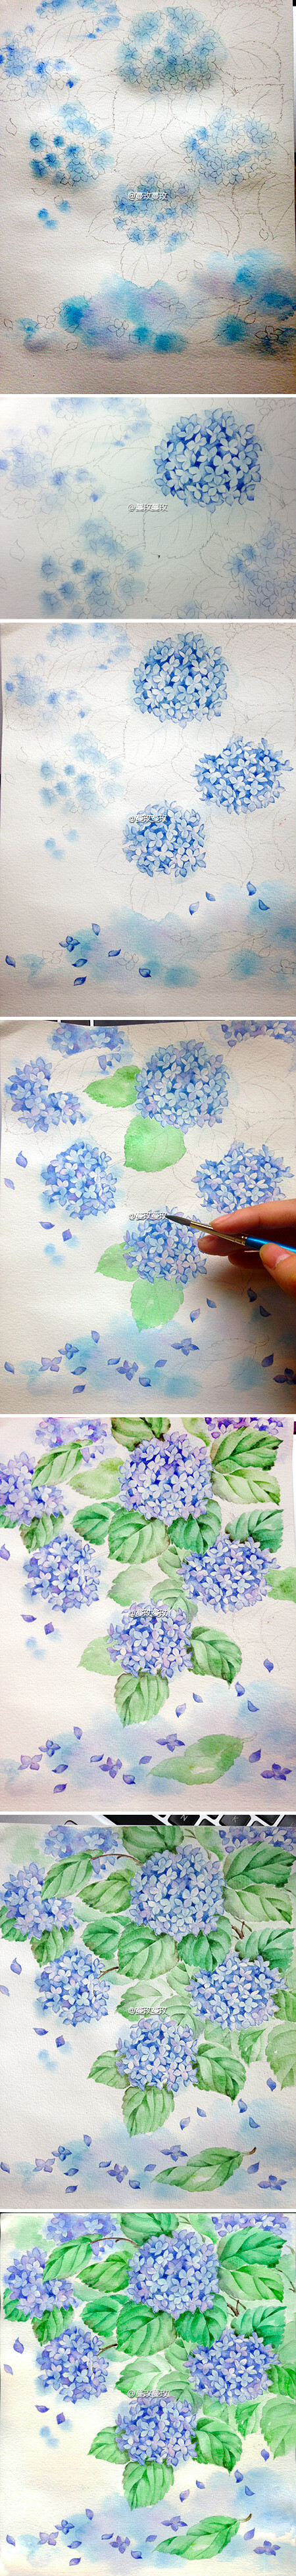 传说中的水彩教程 夏至 梅雨中的紫阳花 堆糖 美图壁纸兴趣社区